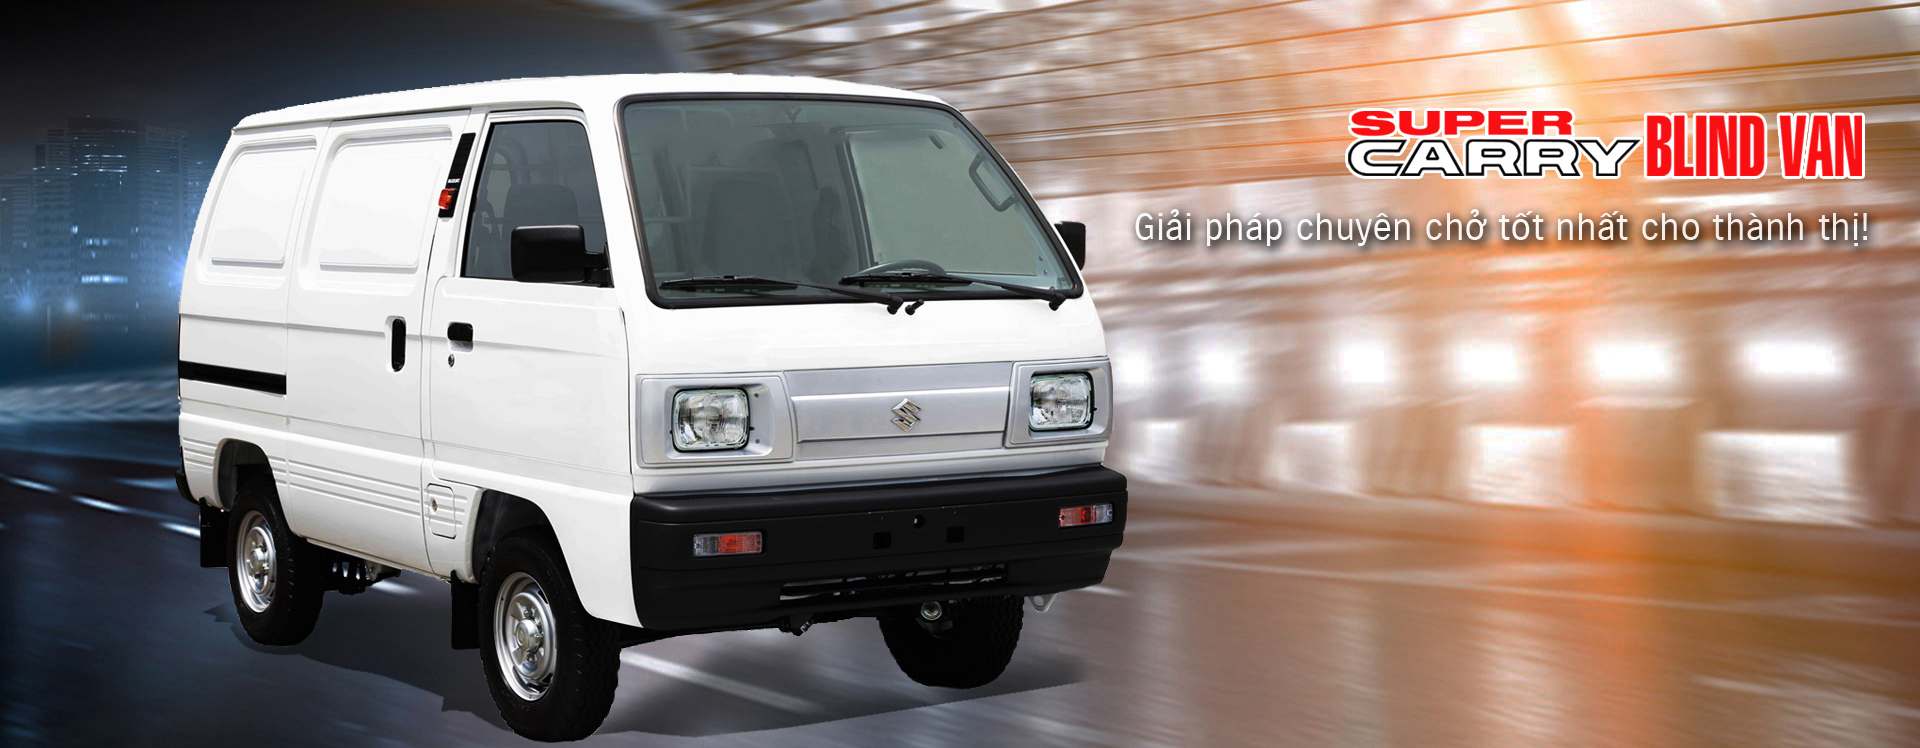 Suzuki Van Blind được trang bị động cơ mạnh mẽ, giúp tiết kiệm nhiên liệu hiệu quả